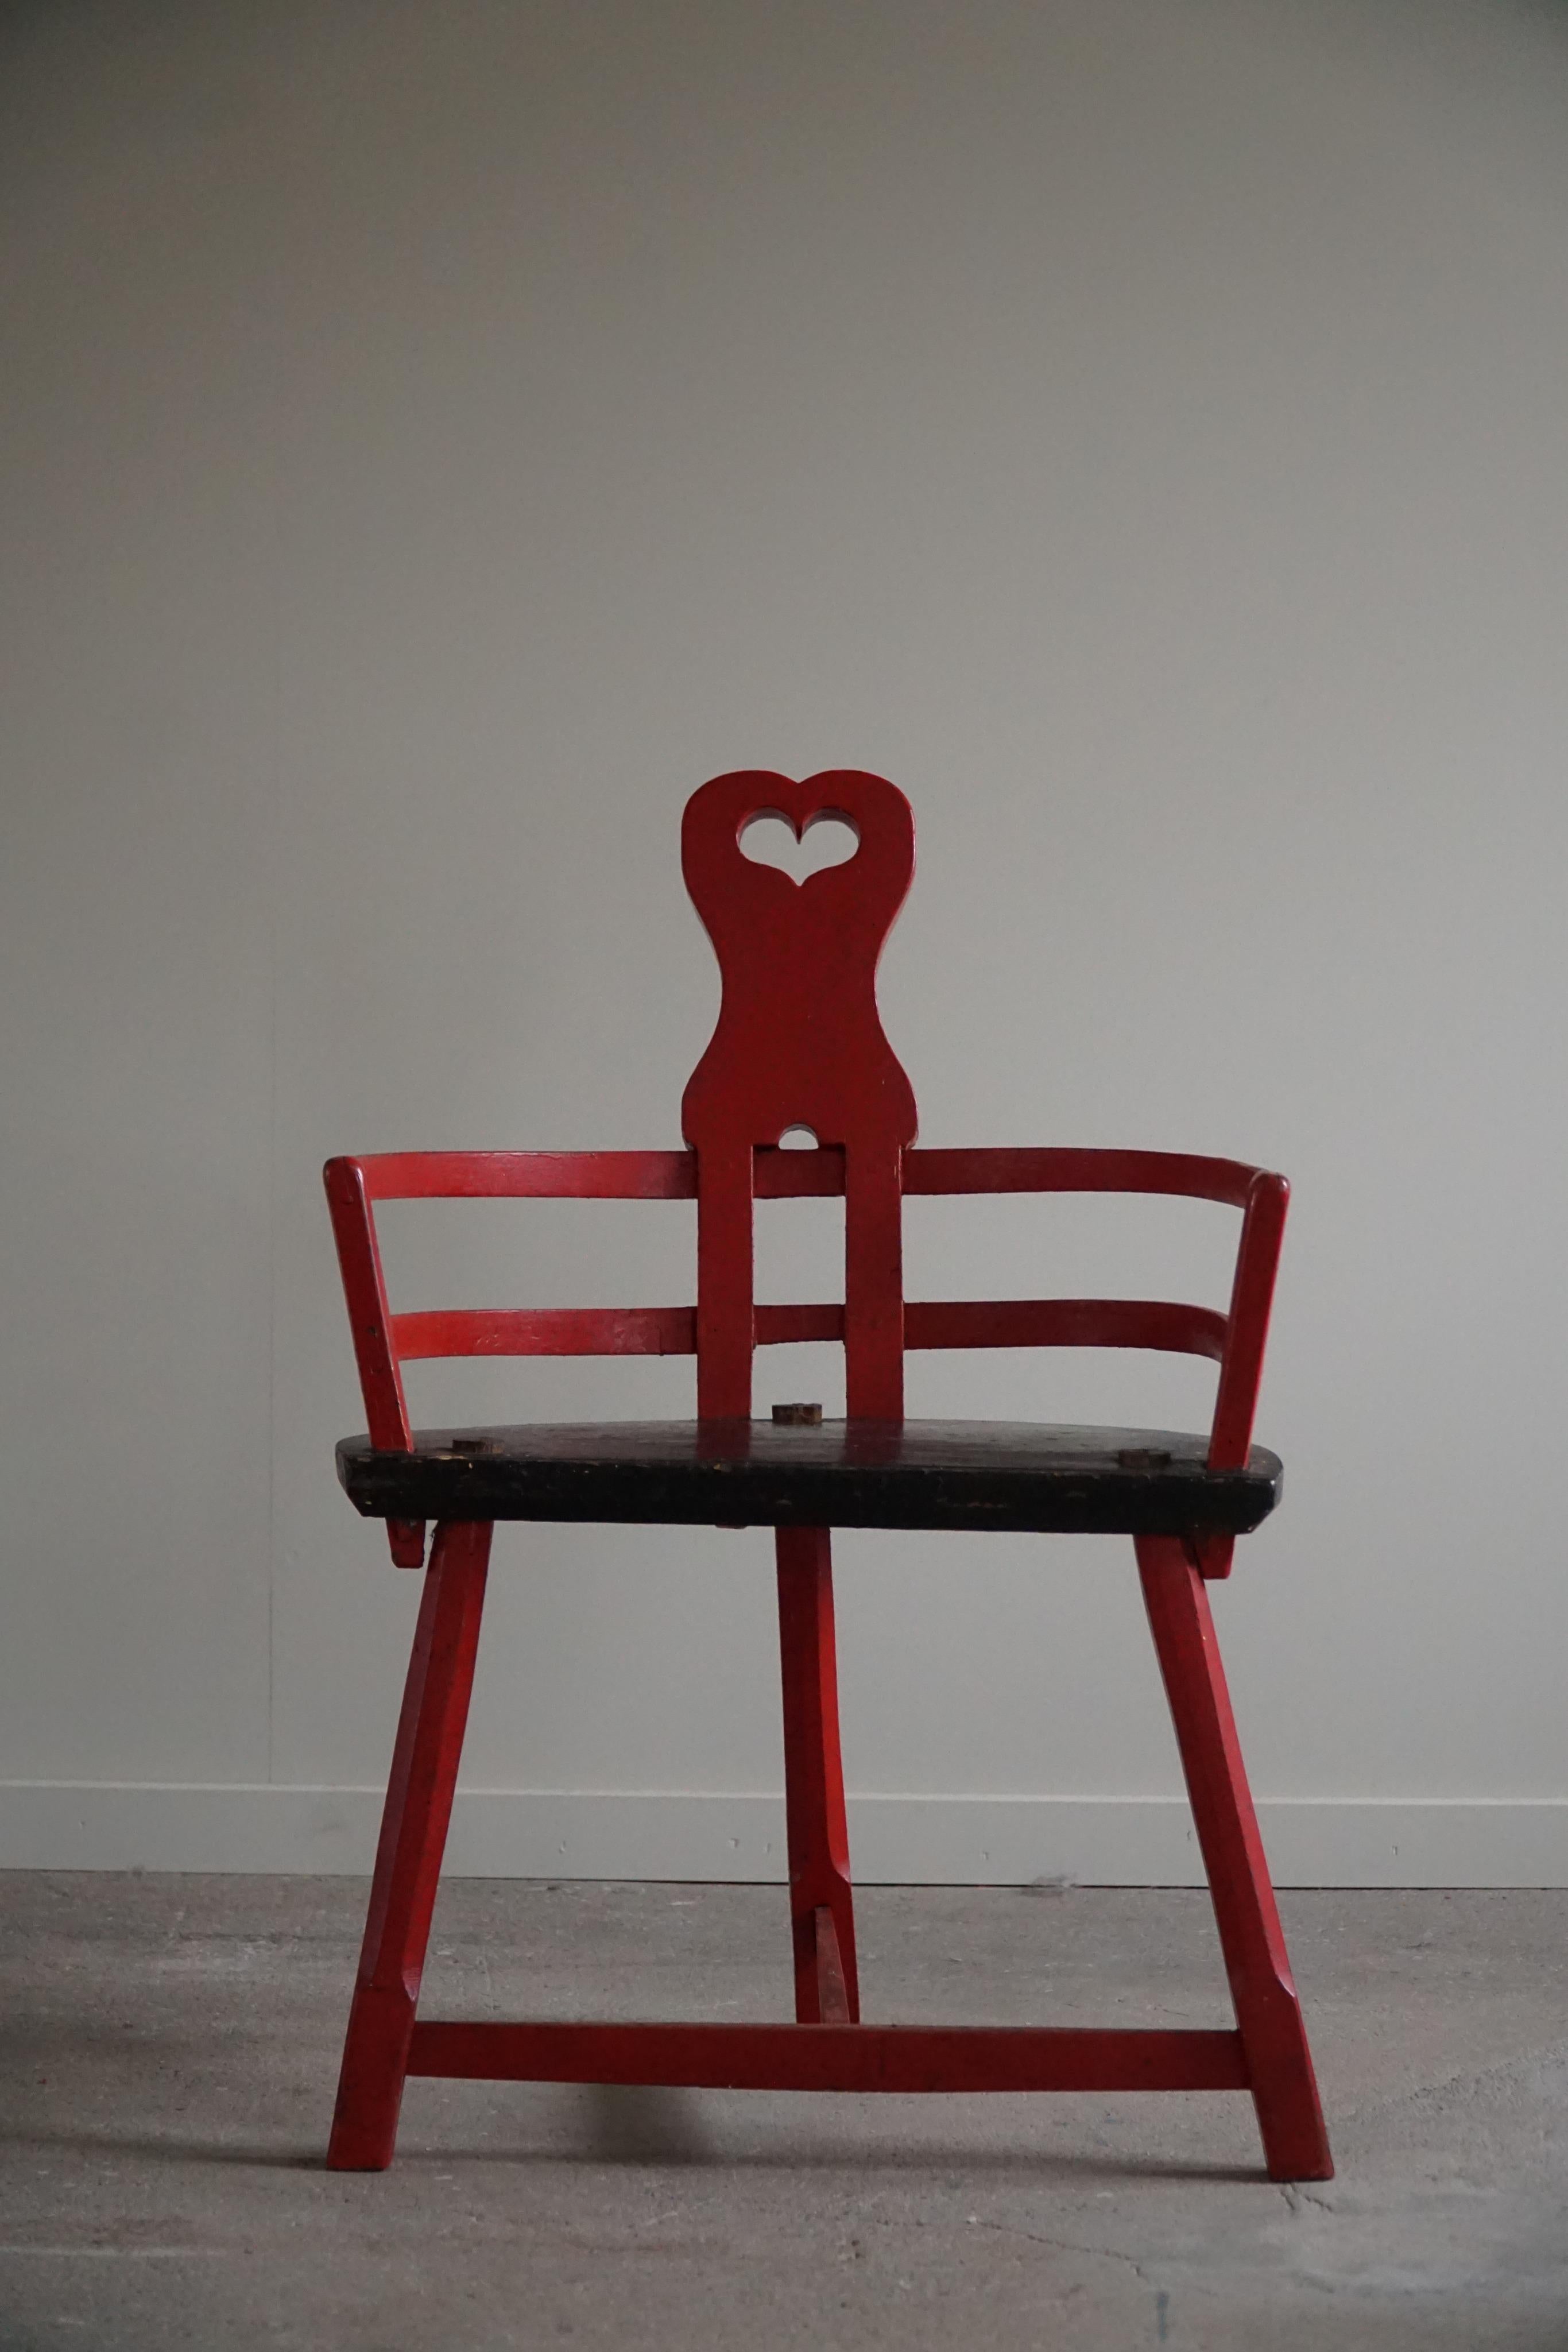 Une chaise en forme de cœur antique si élégante et décorative avec des formes intéressantes. Un objet décoratif rare en bois peint en rouge avec un cœur dans l'appui-tête. Fabriqué par un ébéniste en Suède vers 1900-1920. Une véritable pièce wabi